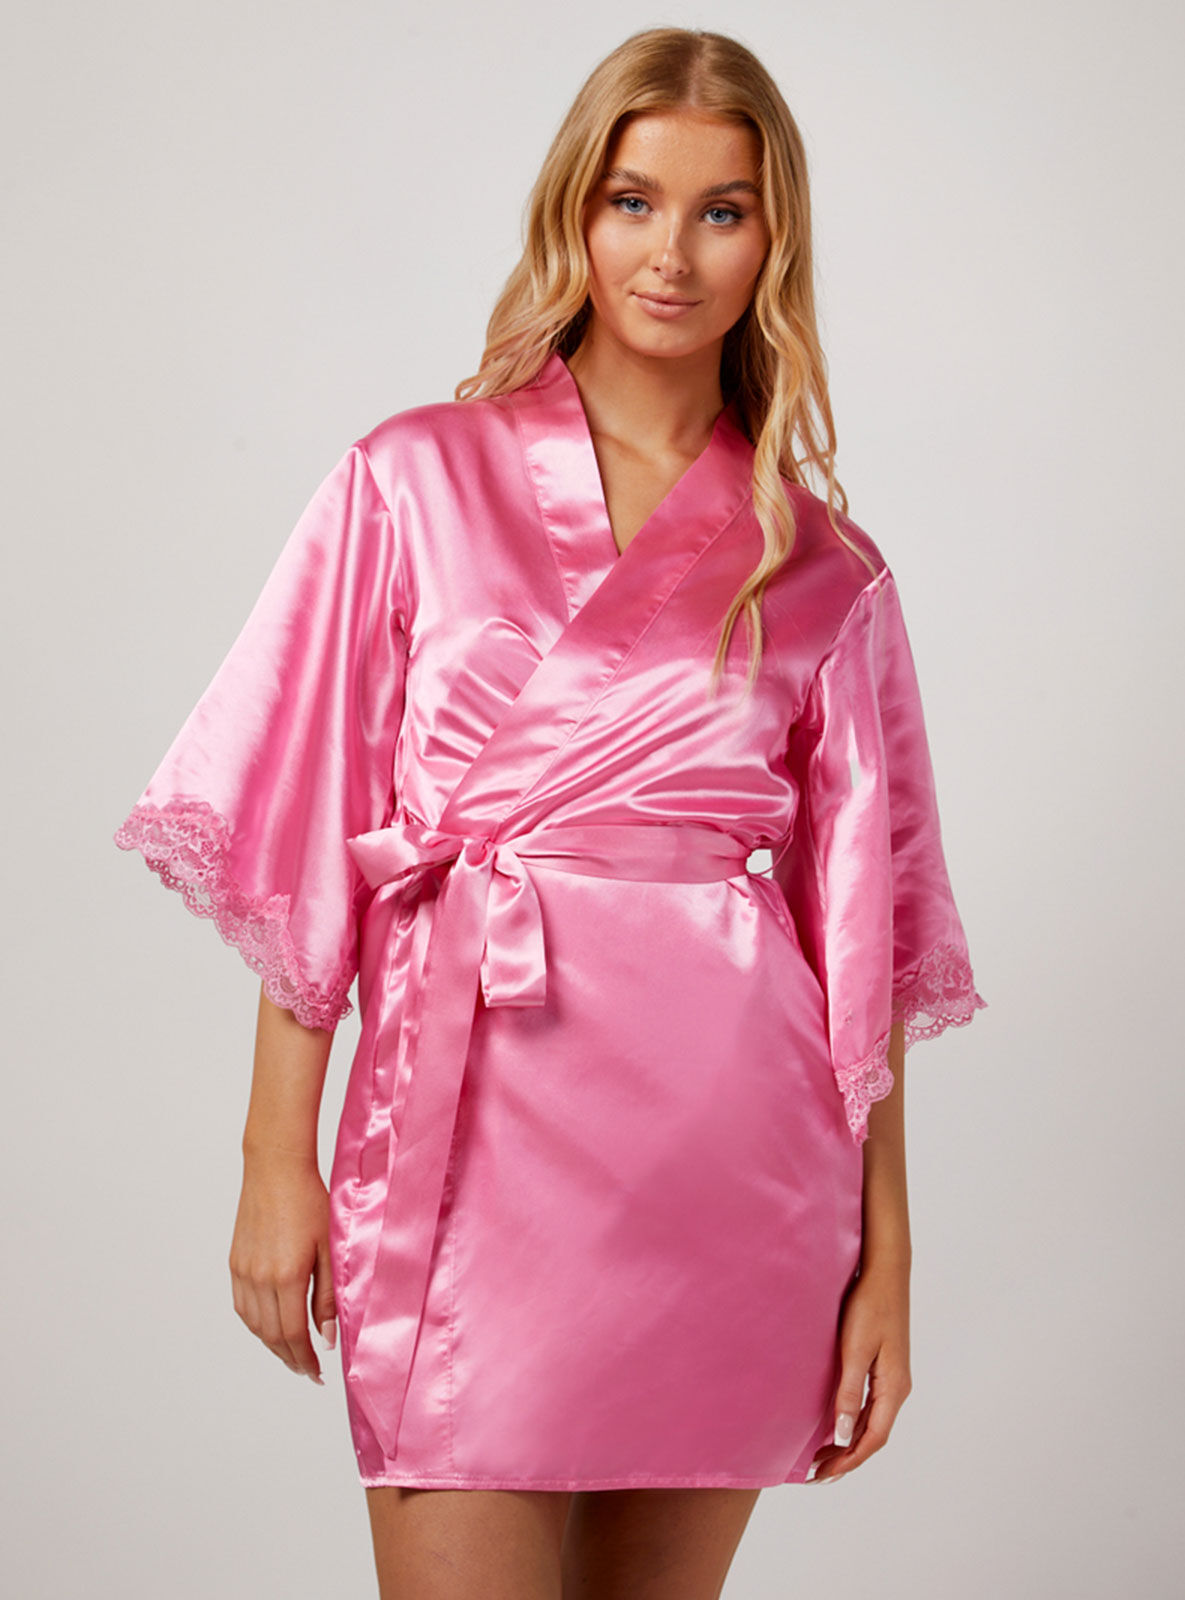 Boux Avenue Maisie satin short robe - Hot Pink - M